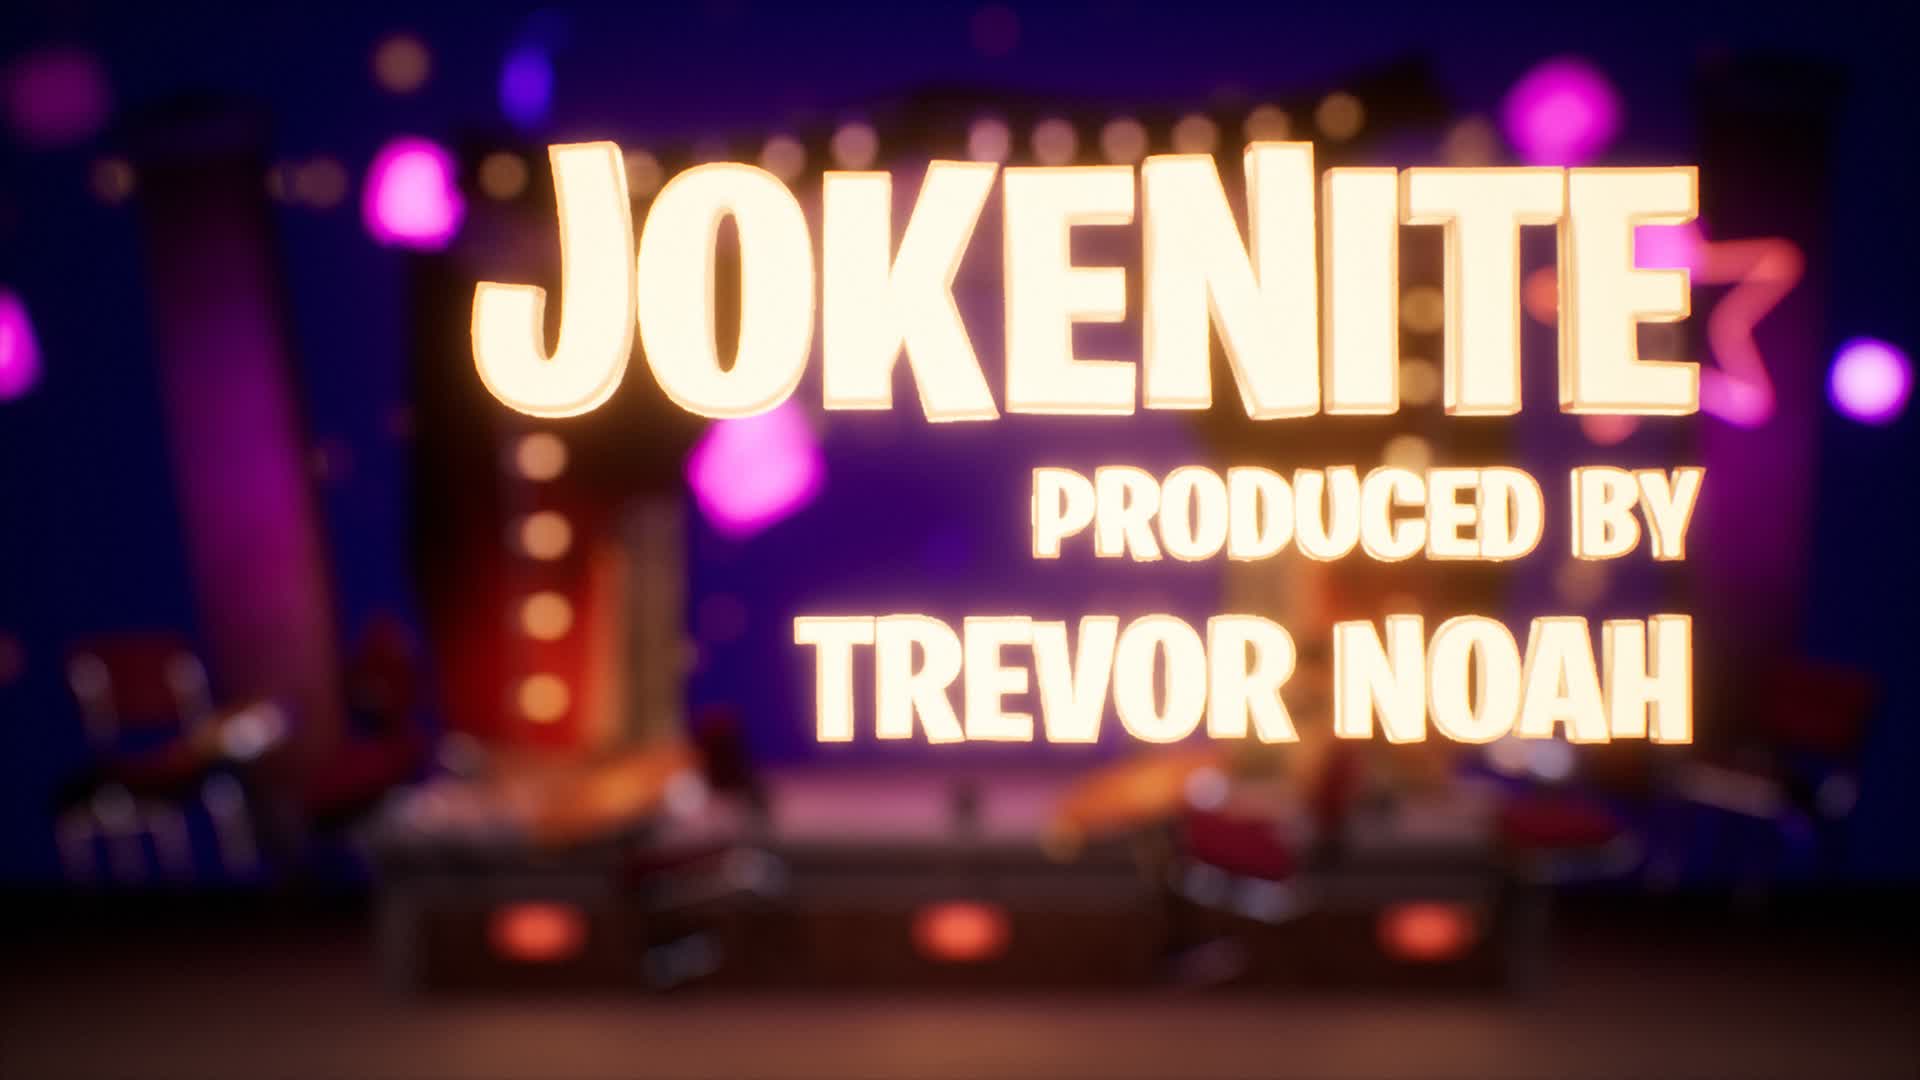 【注目の島】JokeNite Produced by Trevor Noah